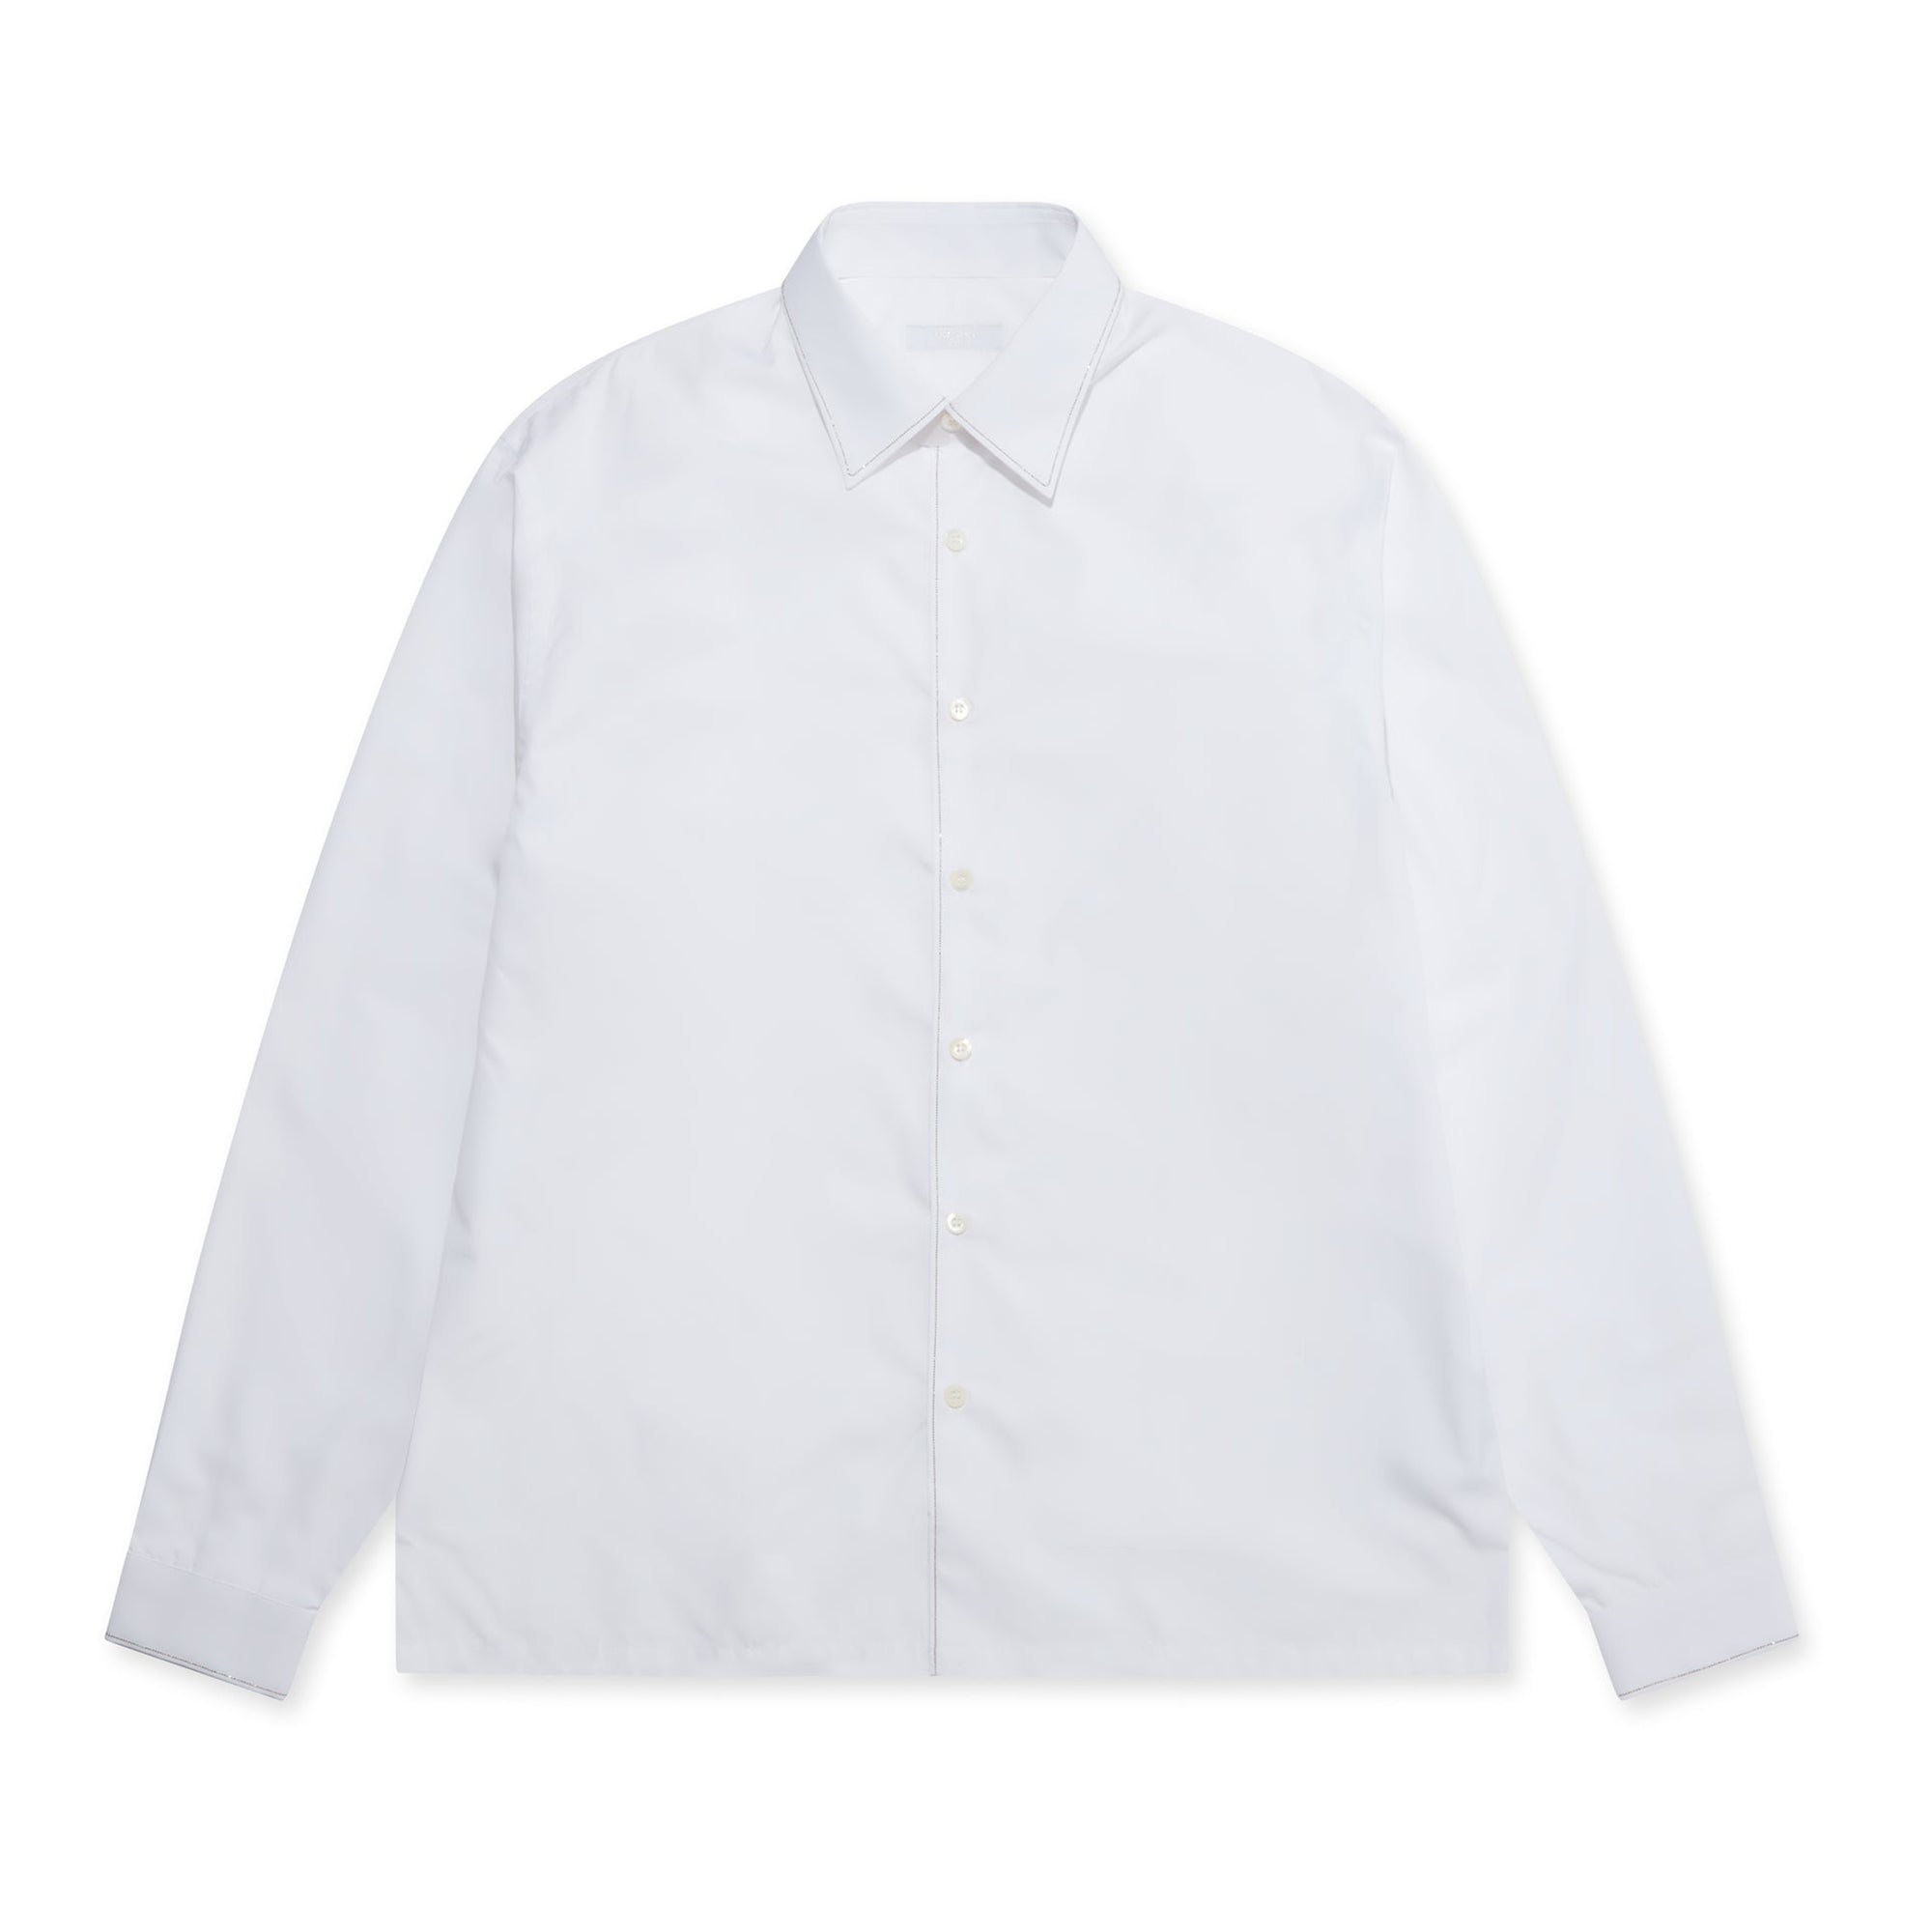 Prada - Men’s Cotton Shirt - (White) view 1